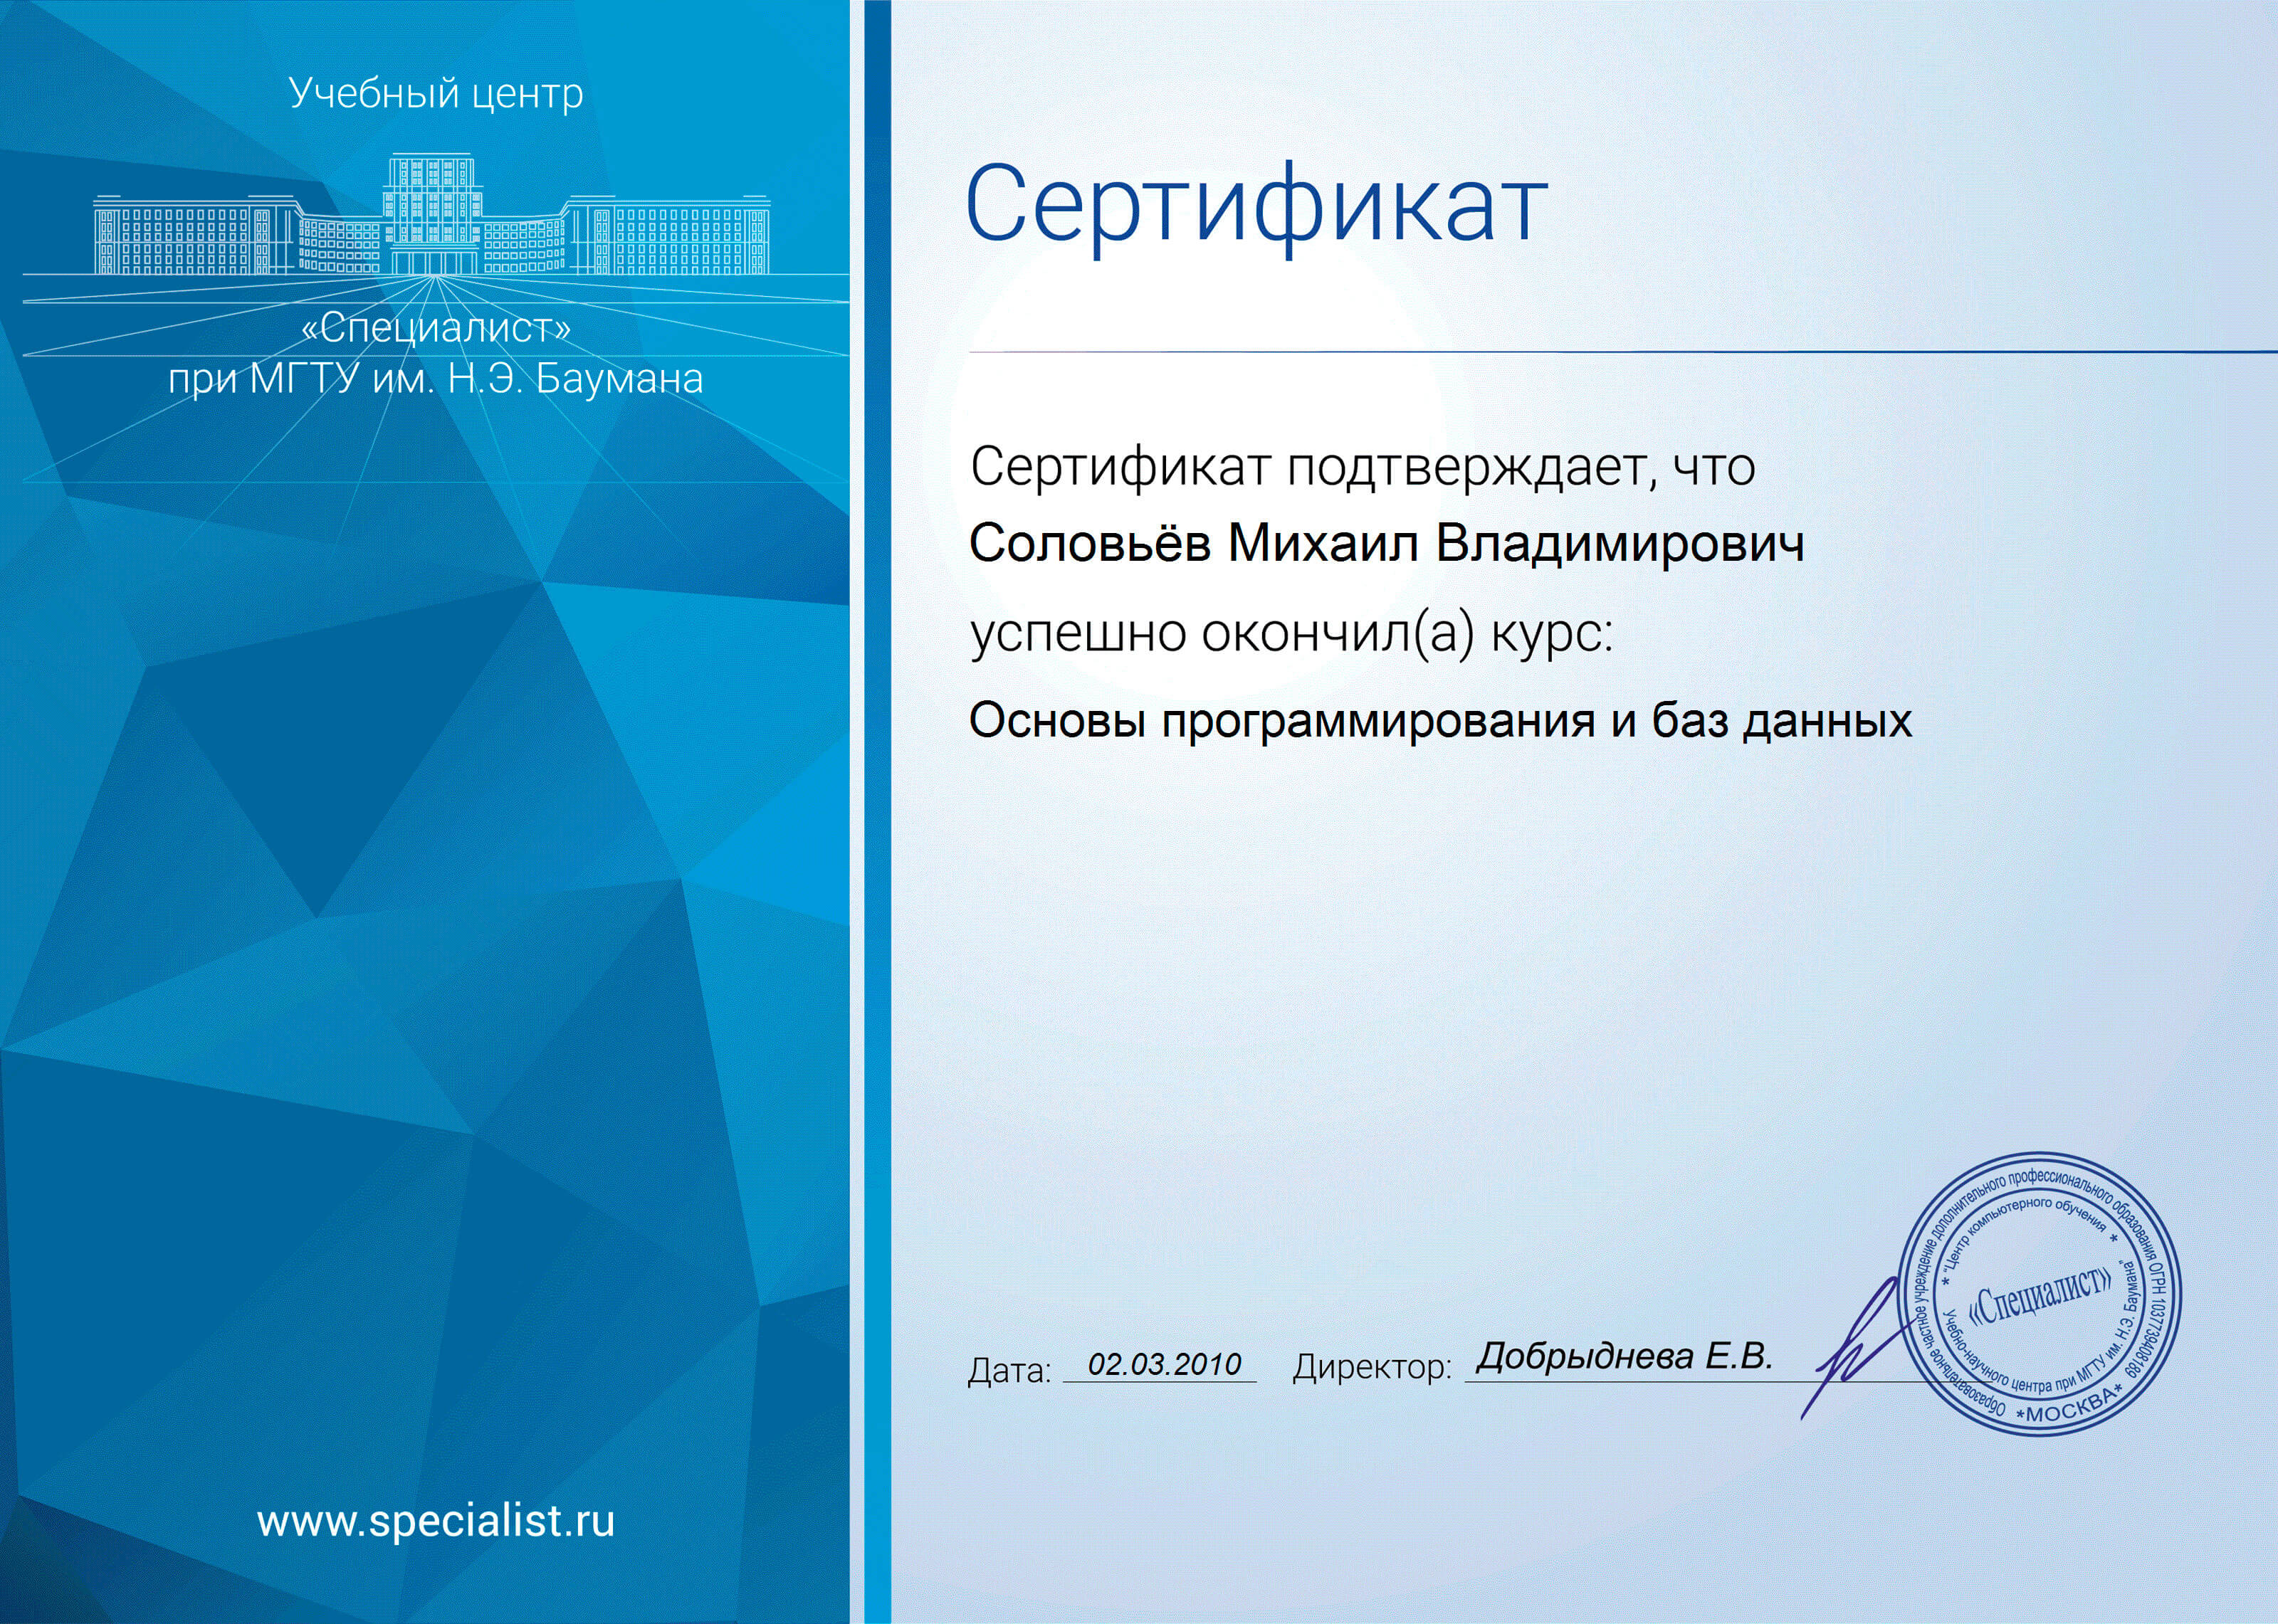 Сертификат “Основыпрограммирования”